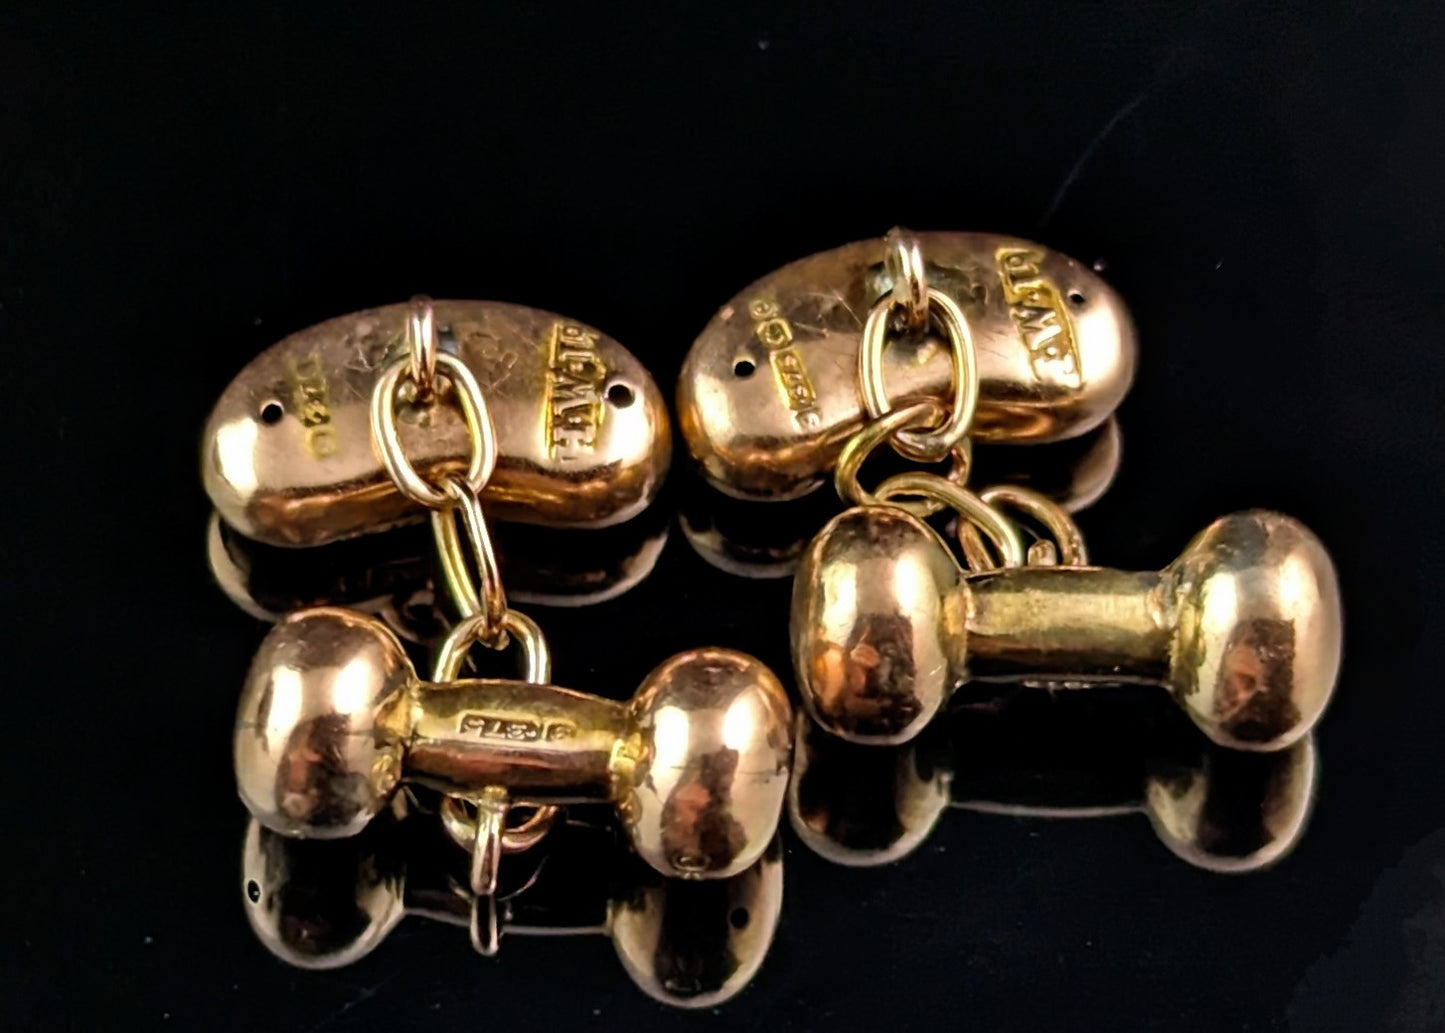 Antique 9ct rose gold lucky bean cufflinks, Edwardian